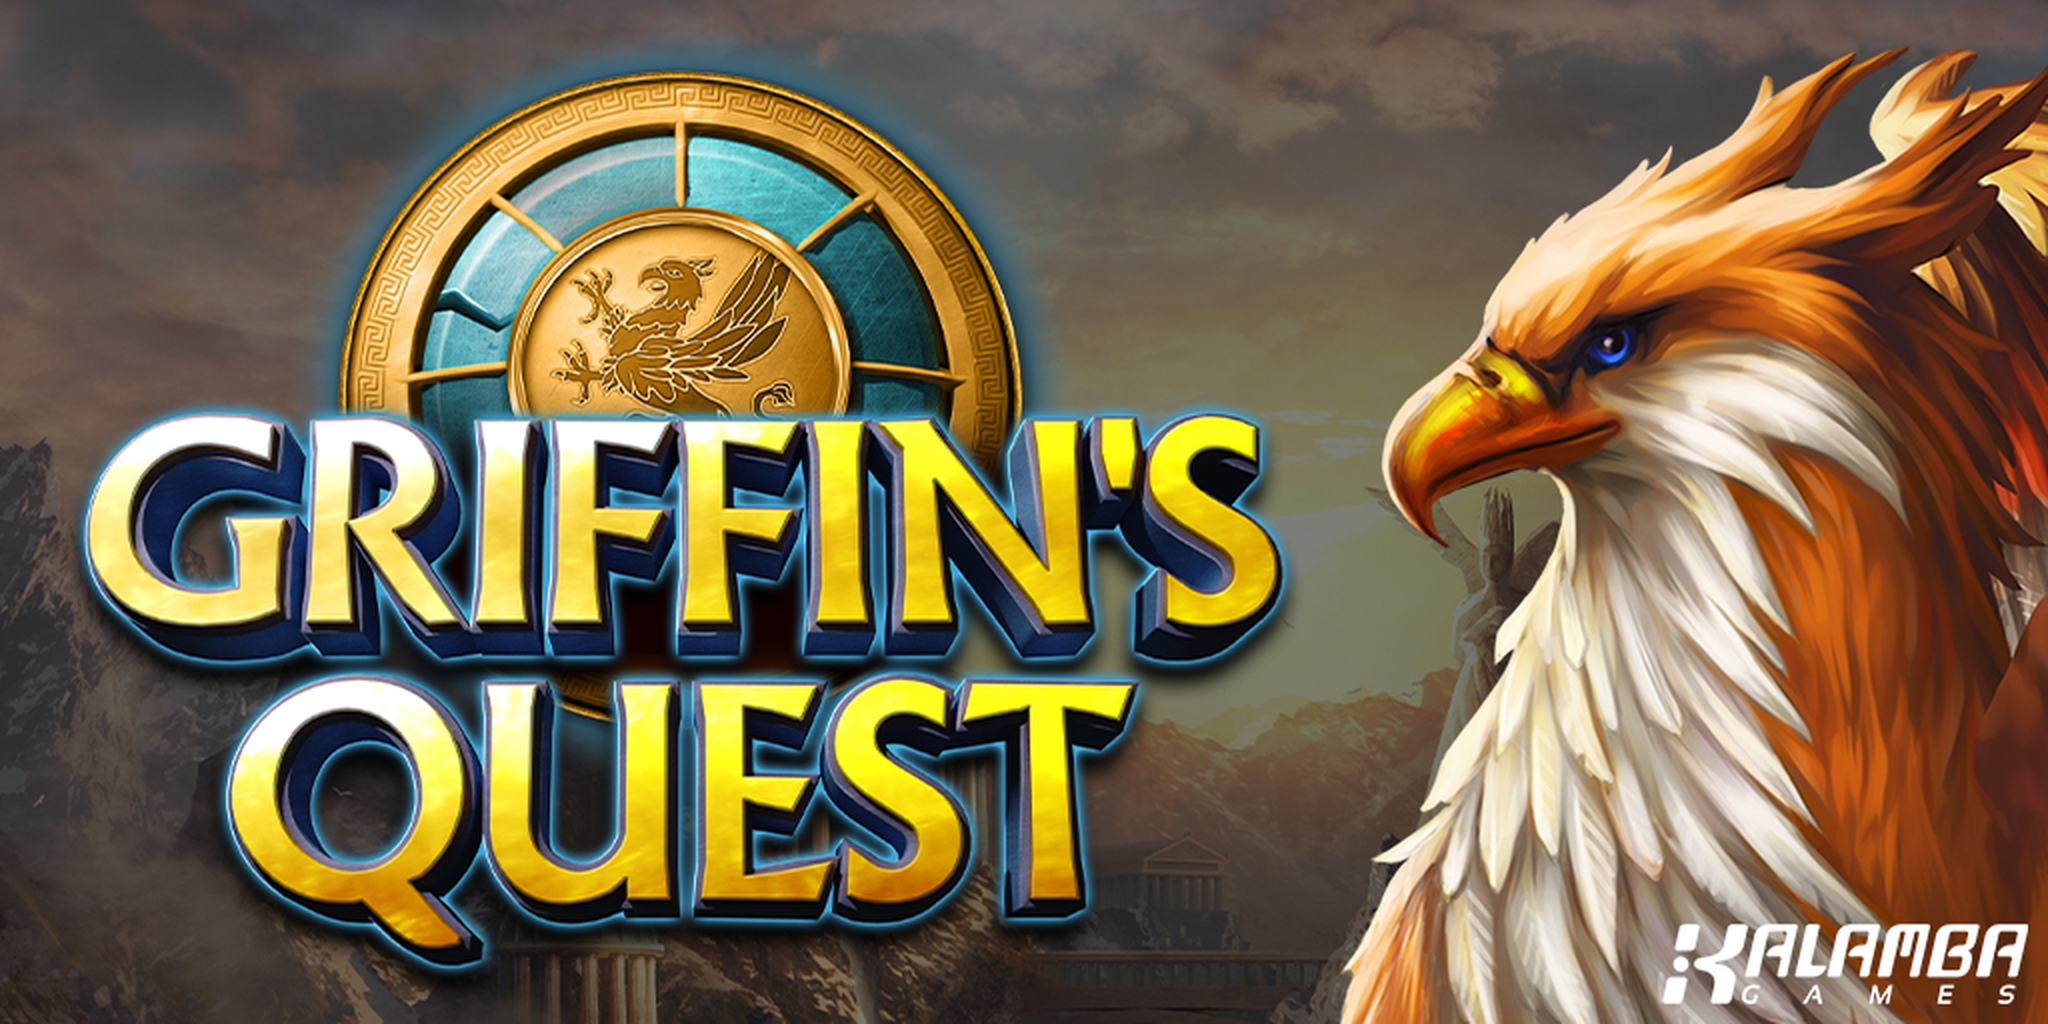 Griffins Quest